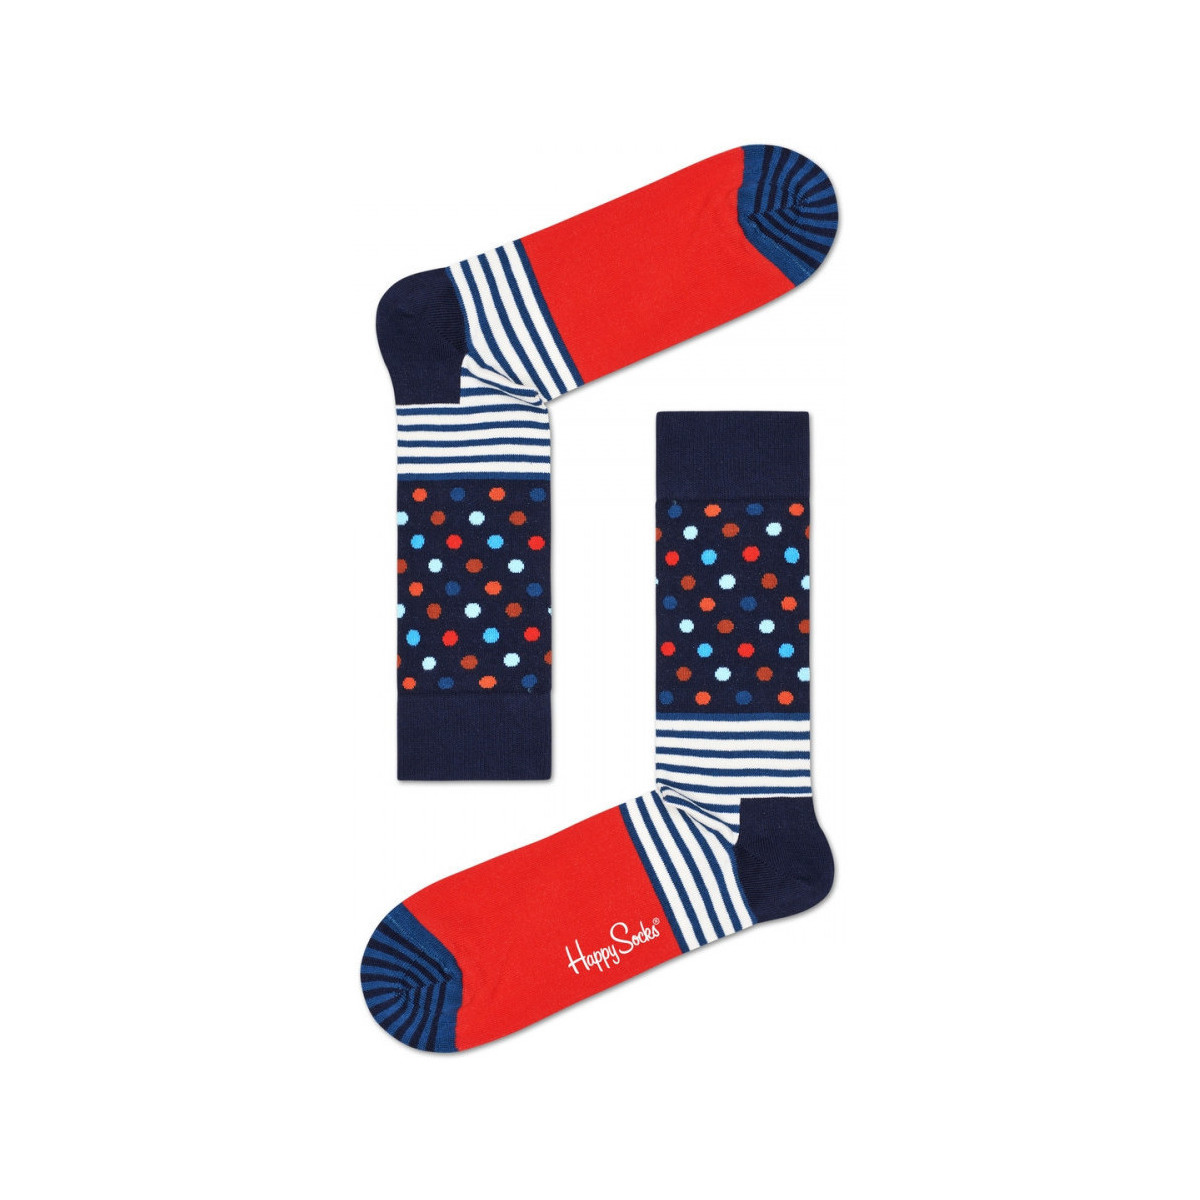 Spodní prádlo Ponožky Happy socks Stripes and dots sock           